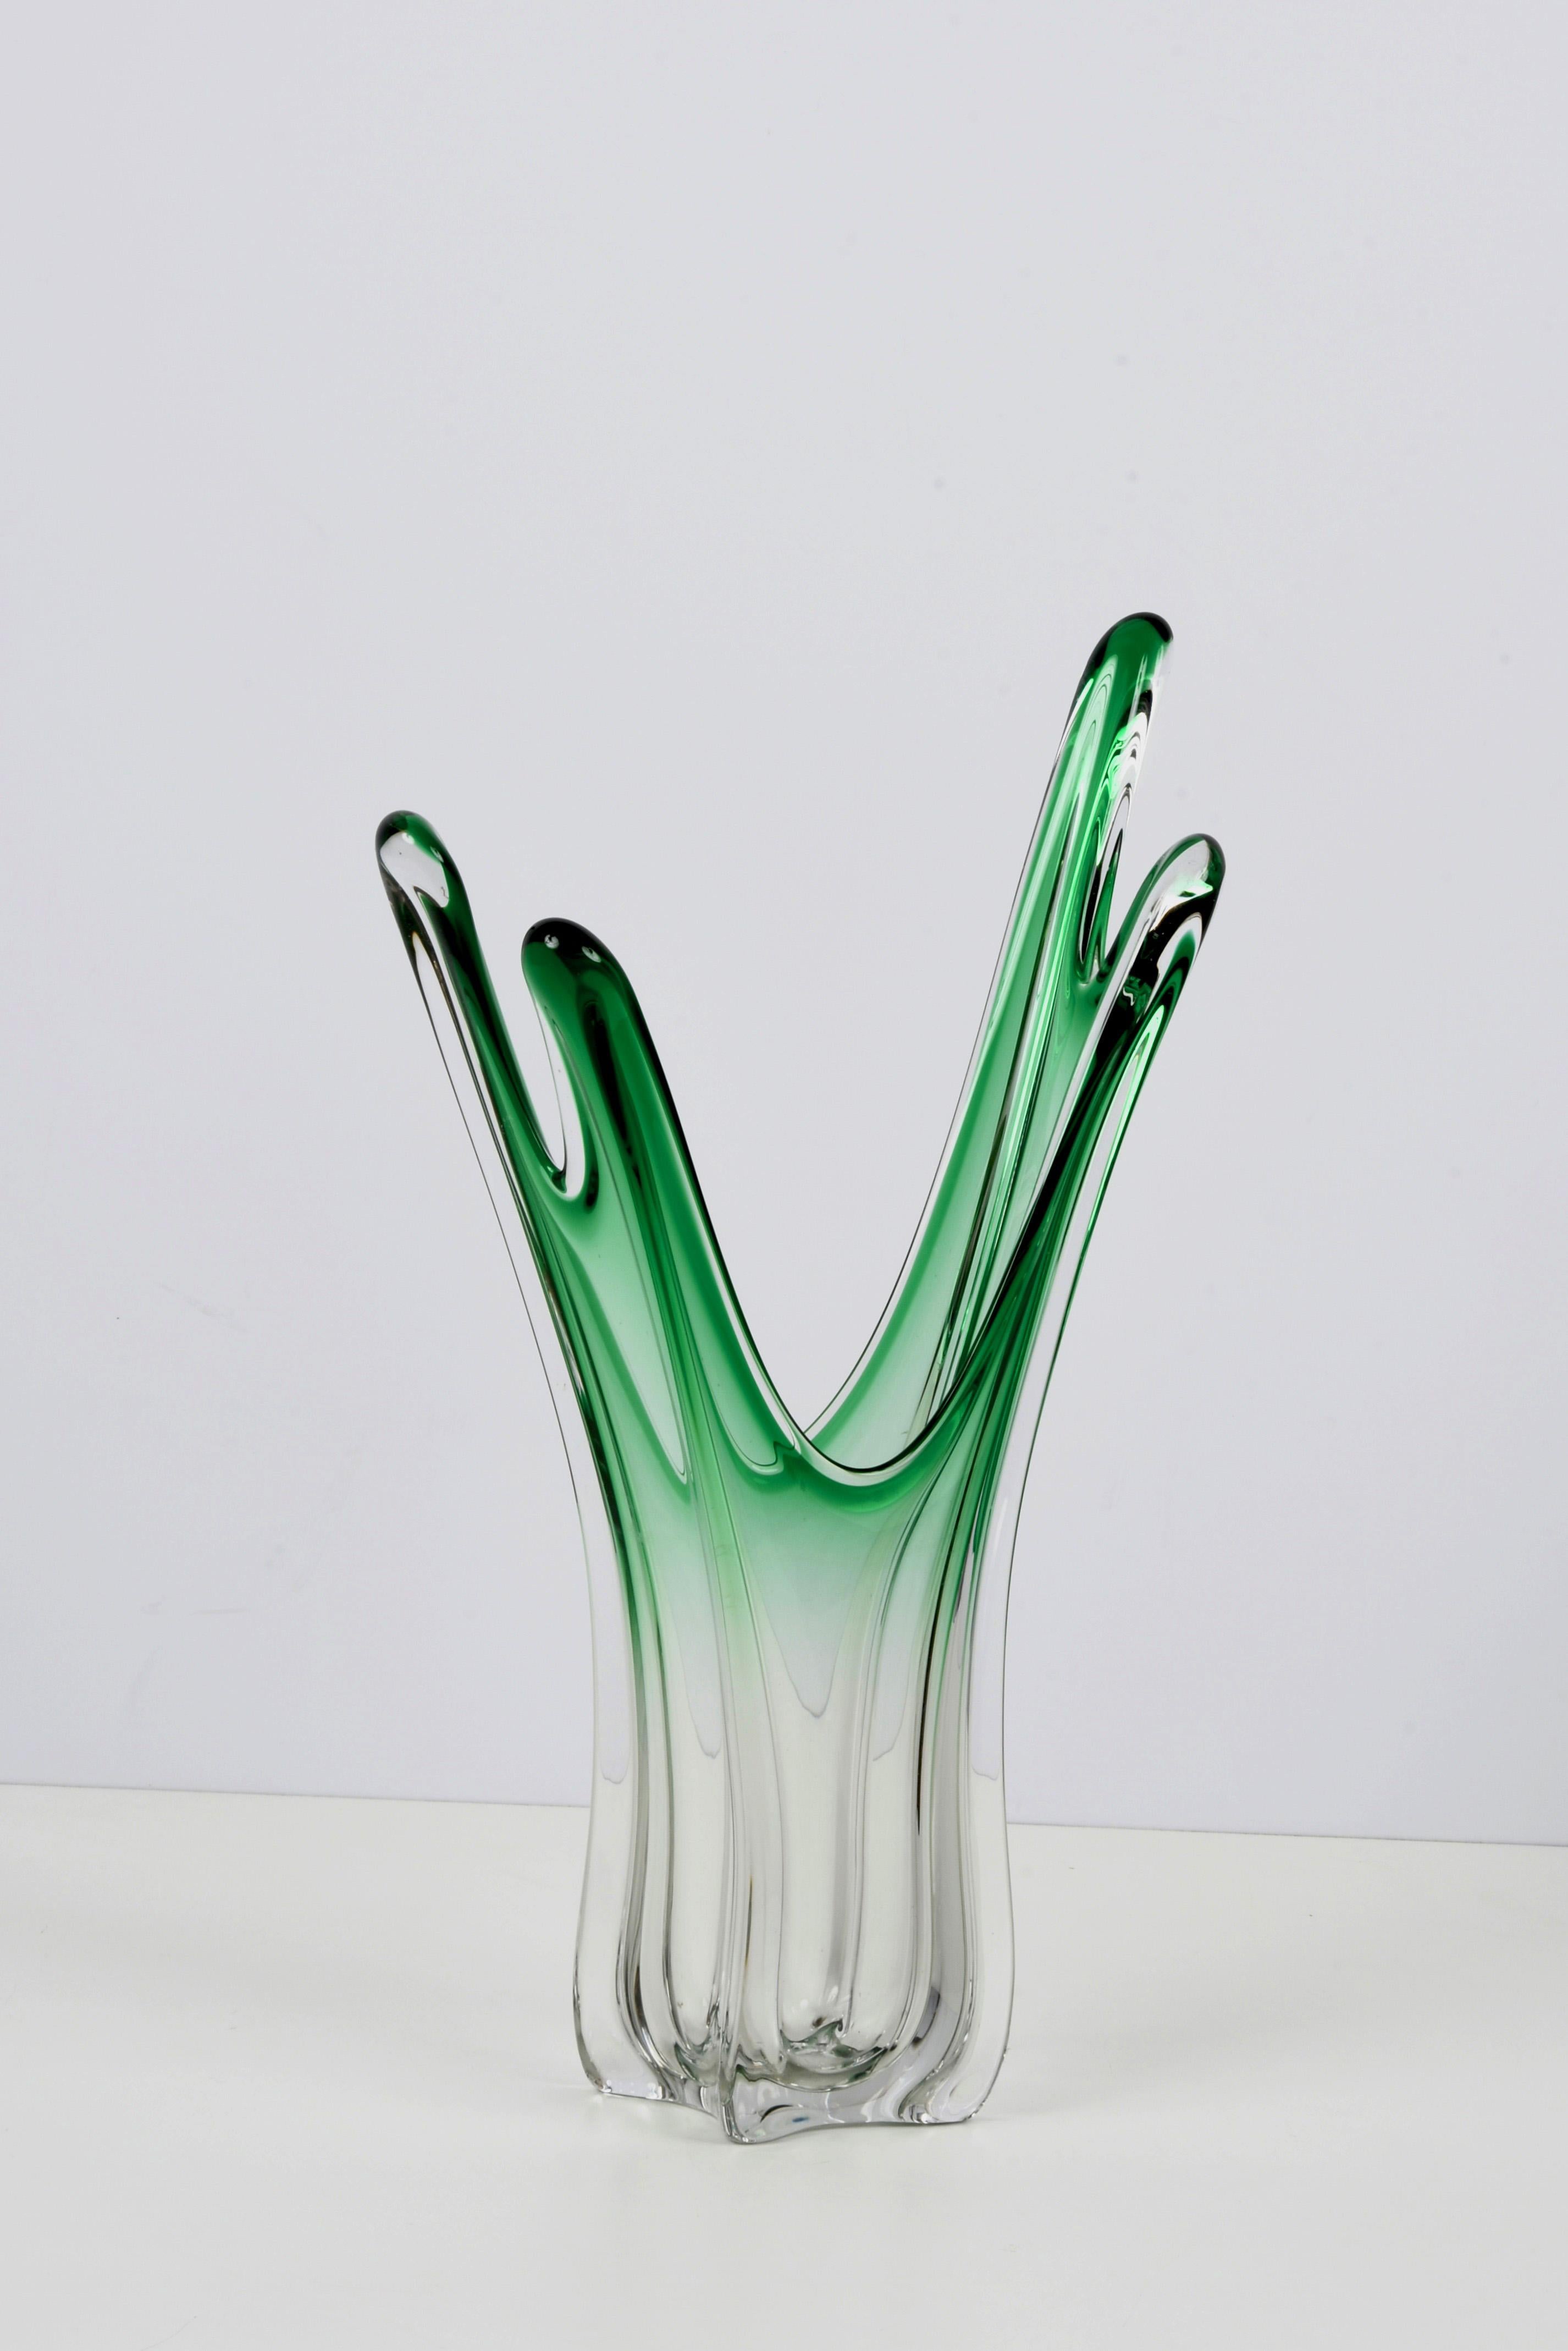 Grand vase d'art submergé en cristal de Murano et verre vert. Ce merveilleux article a été produit dans les années 1950 en Italie et il est attribuable à Fratelli Toso Murano.

Ce chef-d'œuvre est fantastique en raison de l'étonnante couleur verte